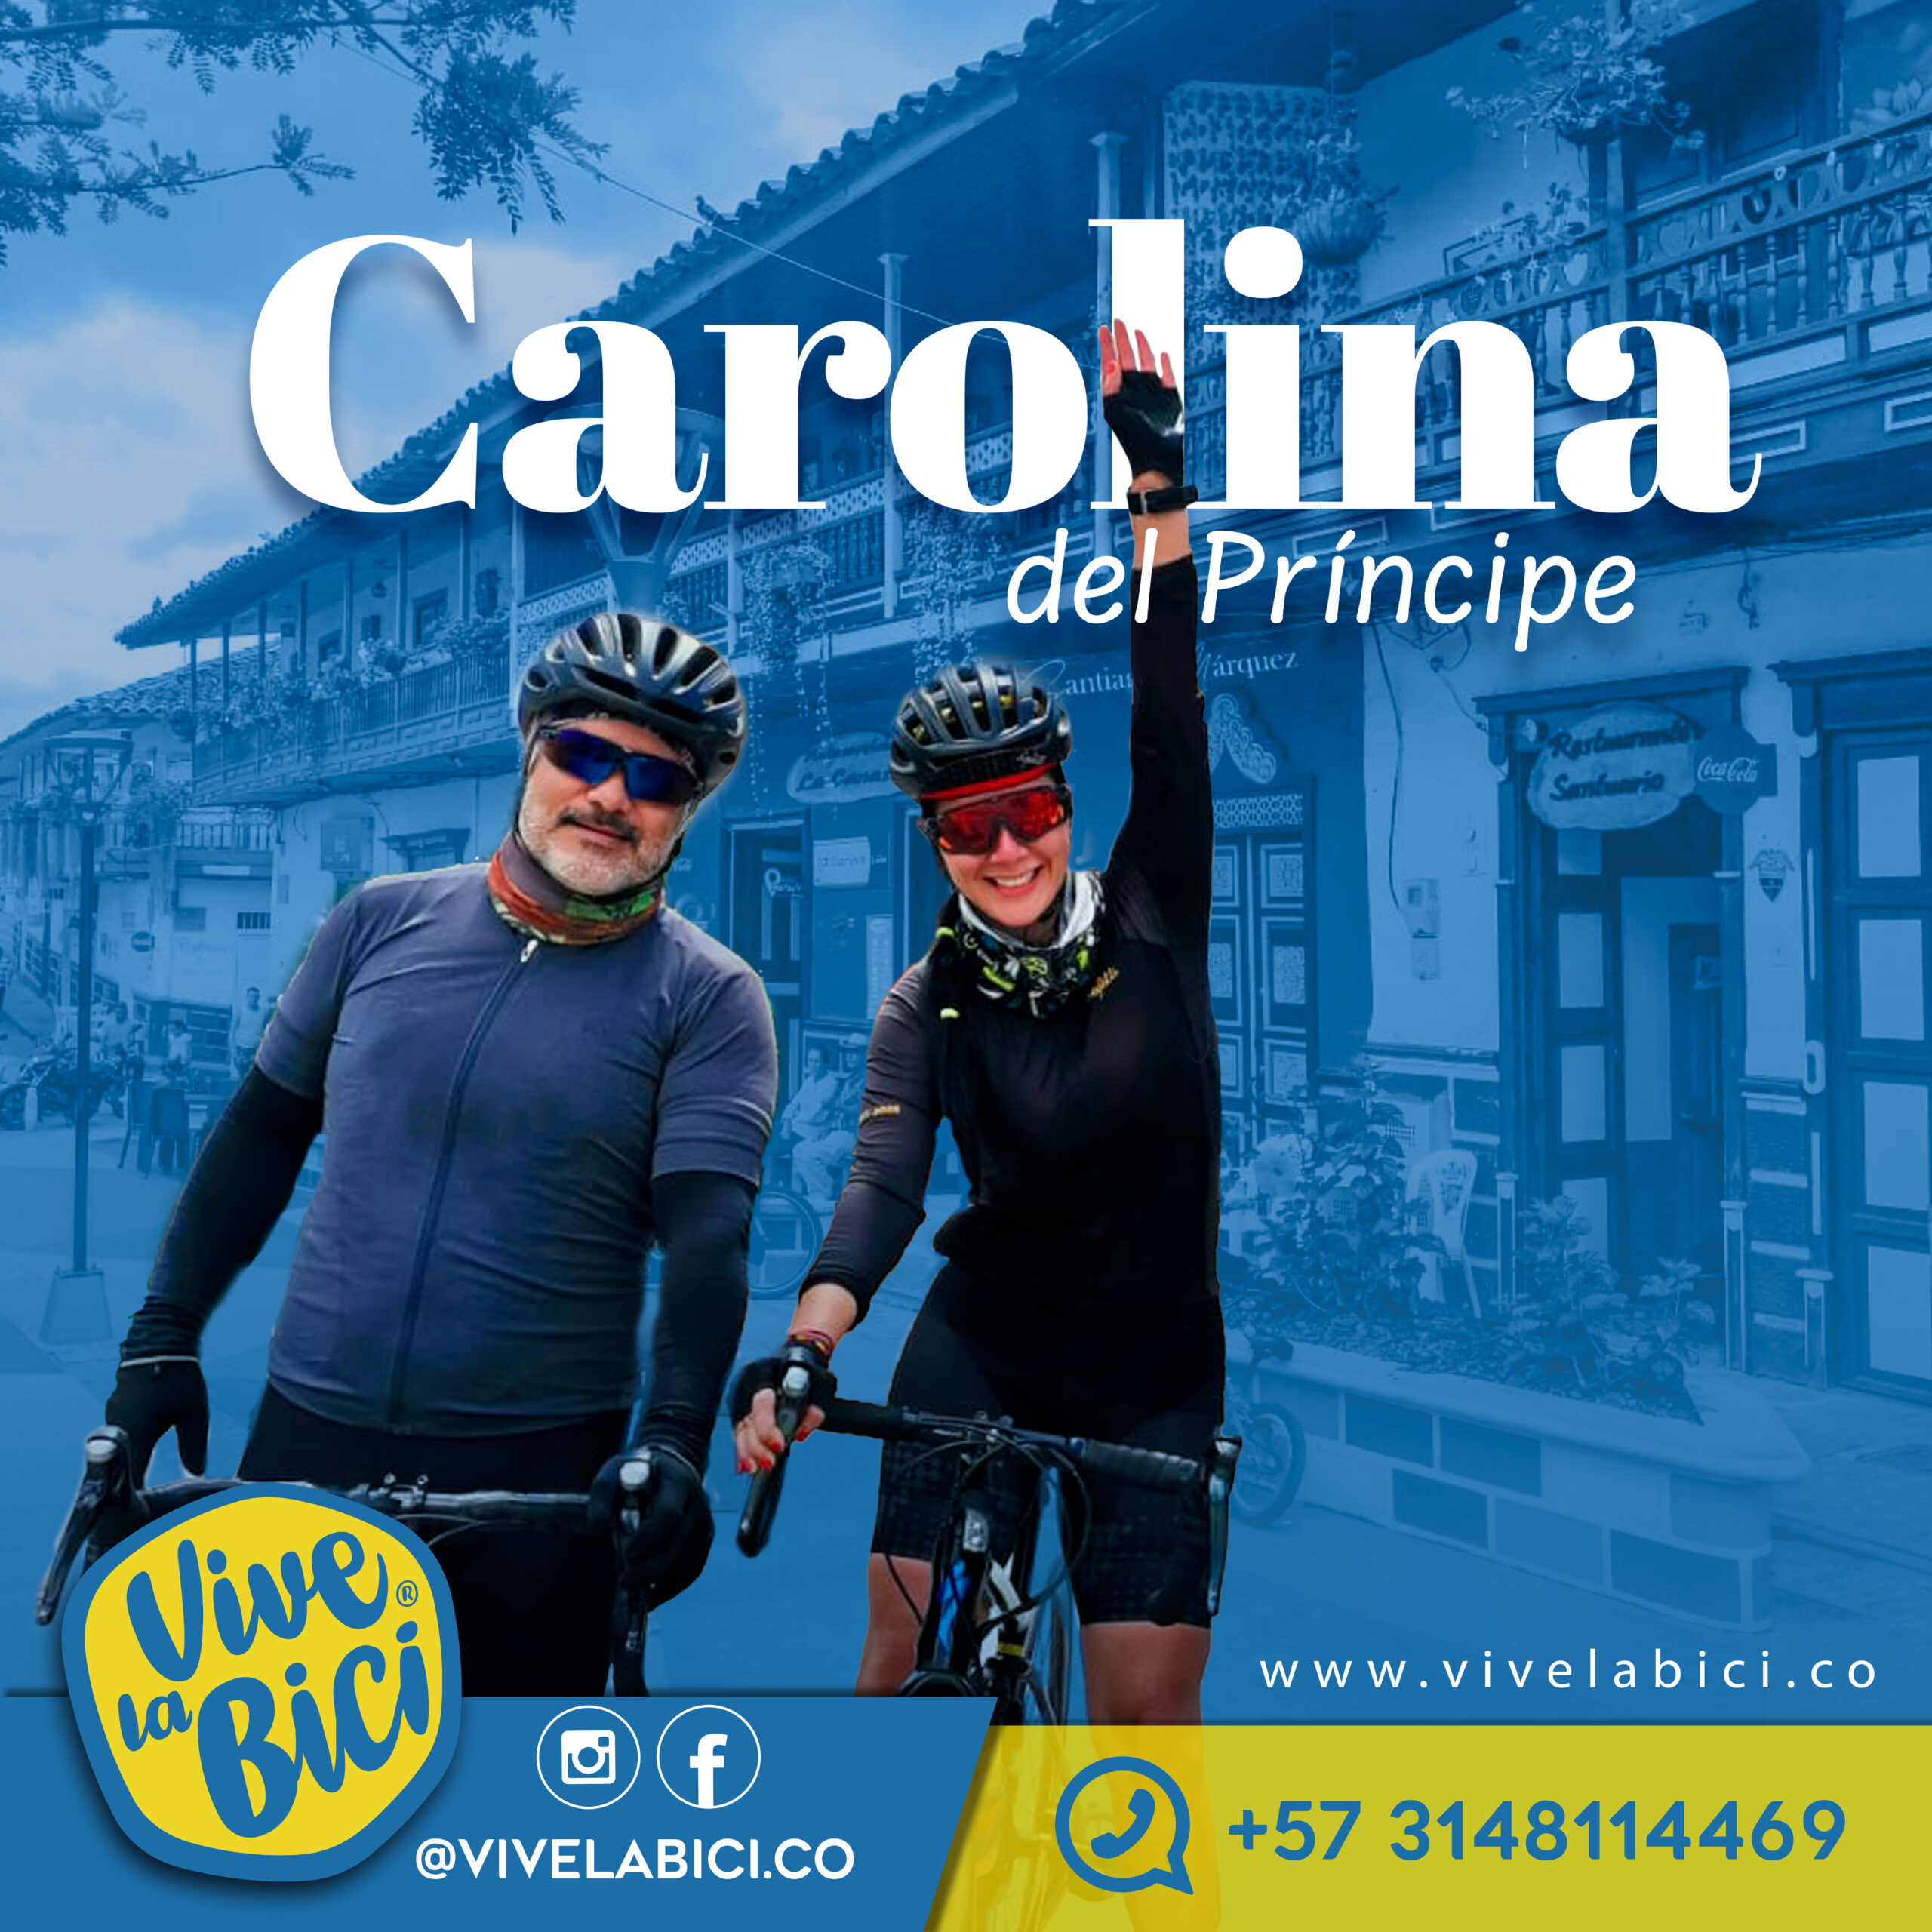 Publicación promocional de ciclistas Vive la Bici en Carolina del Principe